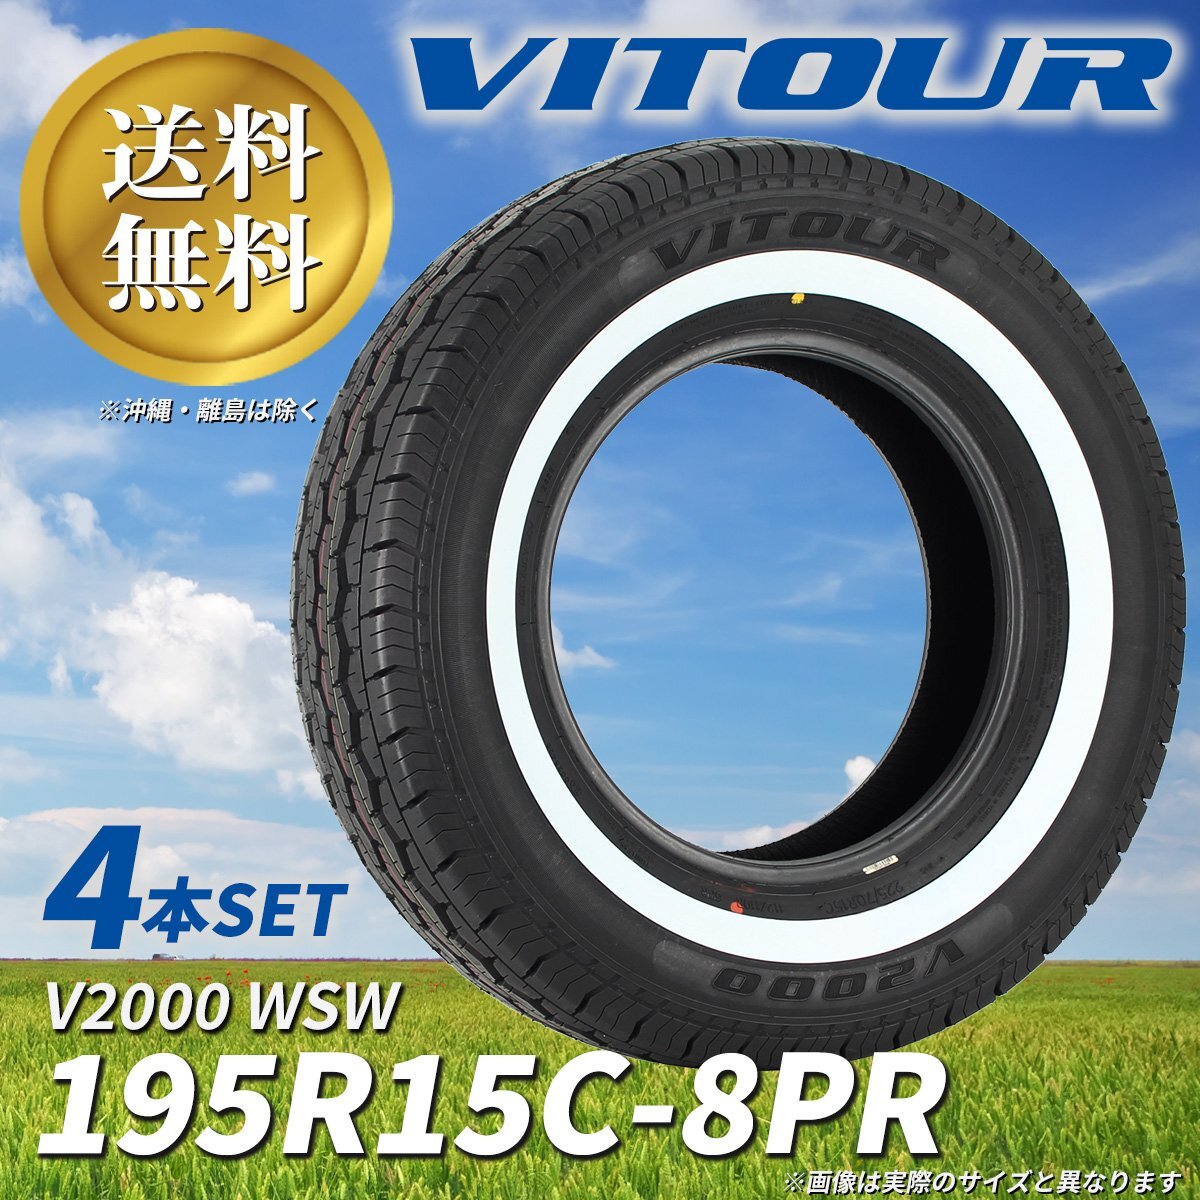 送料無料 ☆ VITOUR TIRE V2000 WSW 195R15C-8PR タイヤ ヴィツァー 新品 未使用 4本セット ホワイトリボン ☆_写真のサイズとは異なります。